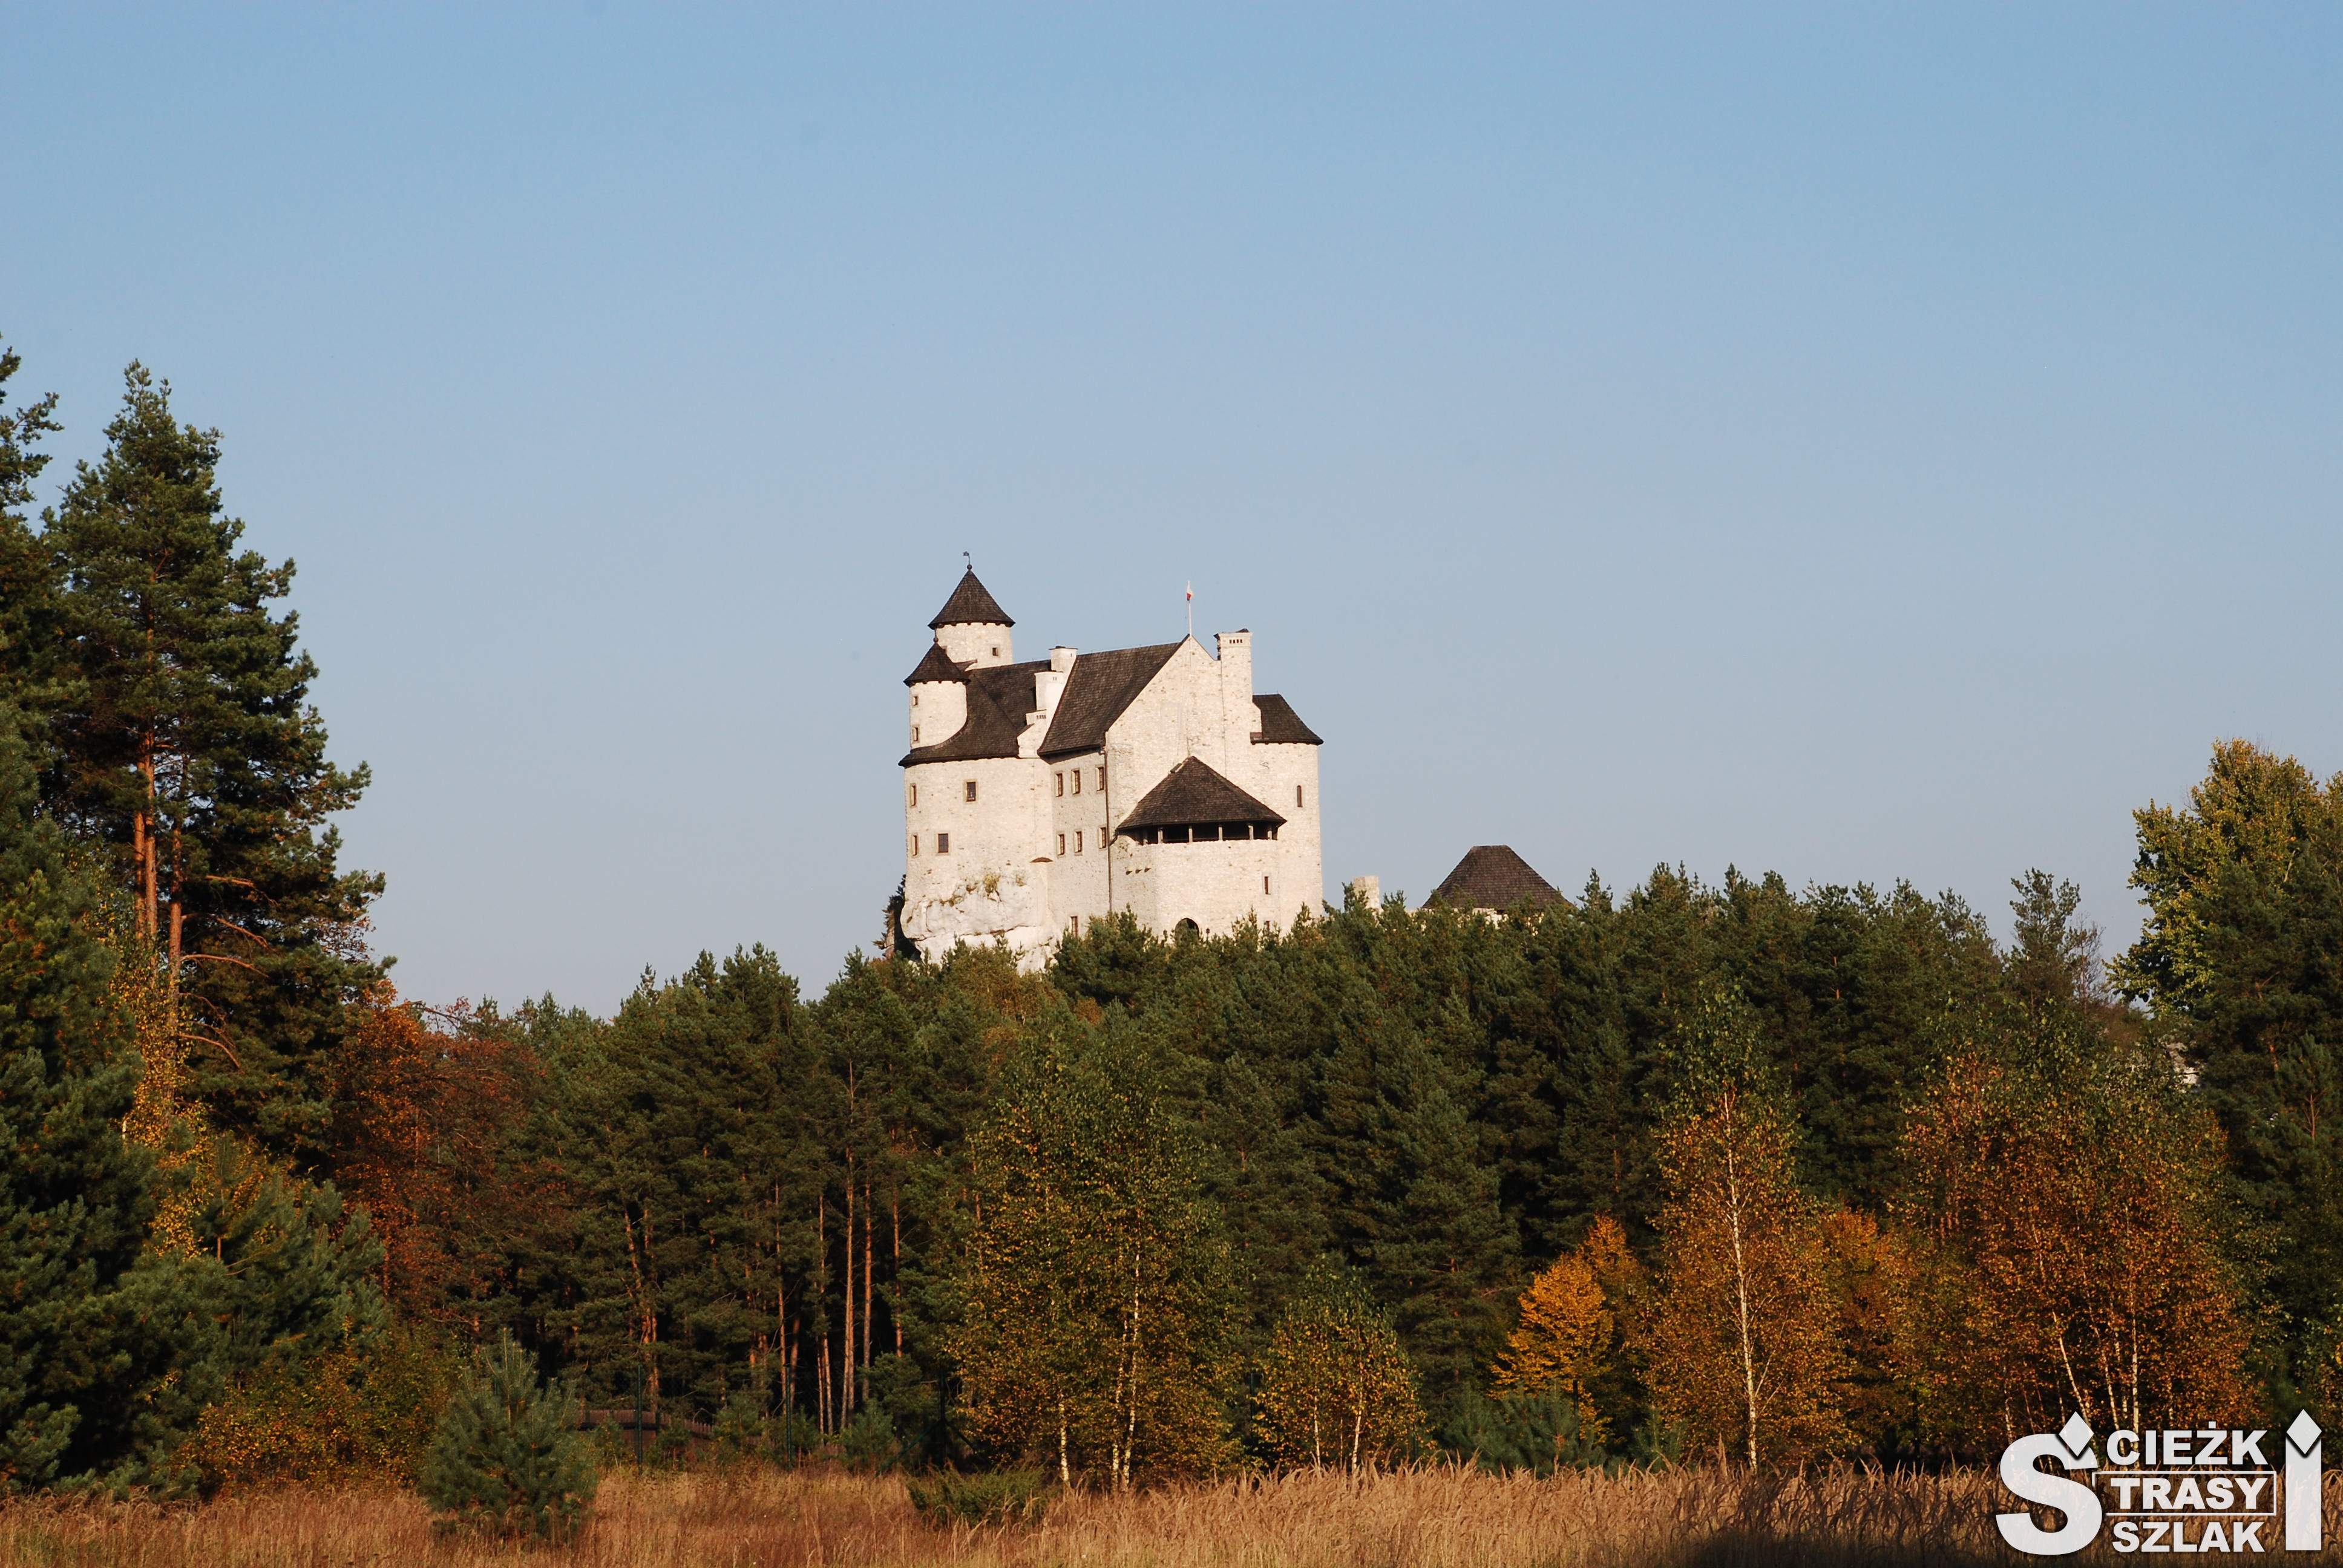 Górujący nad konarami drzew w jesiennym klimacie Zamek Bobolice widziany z Błoni zamkowych